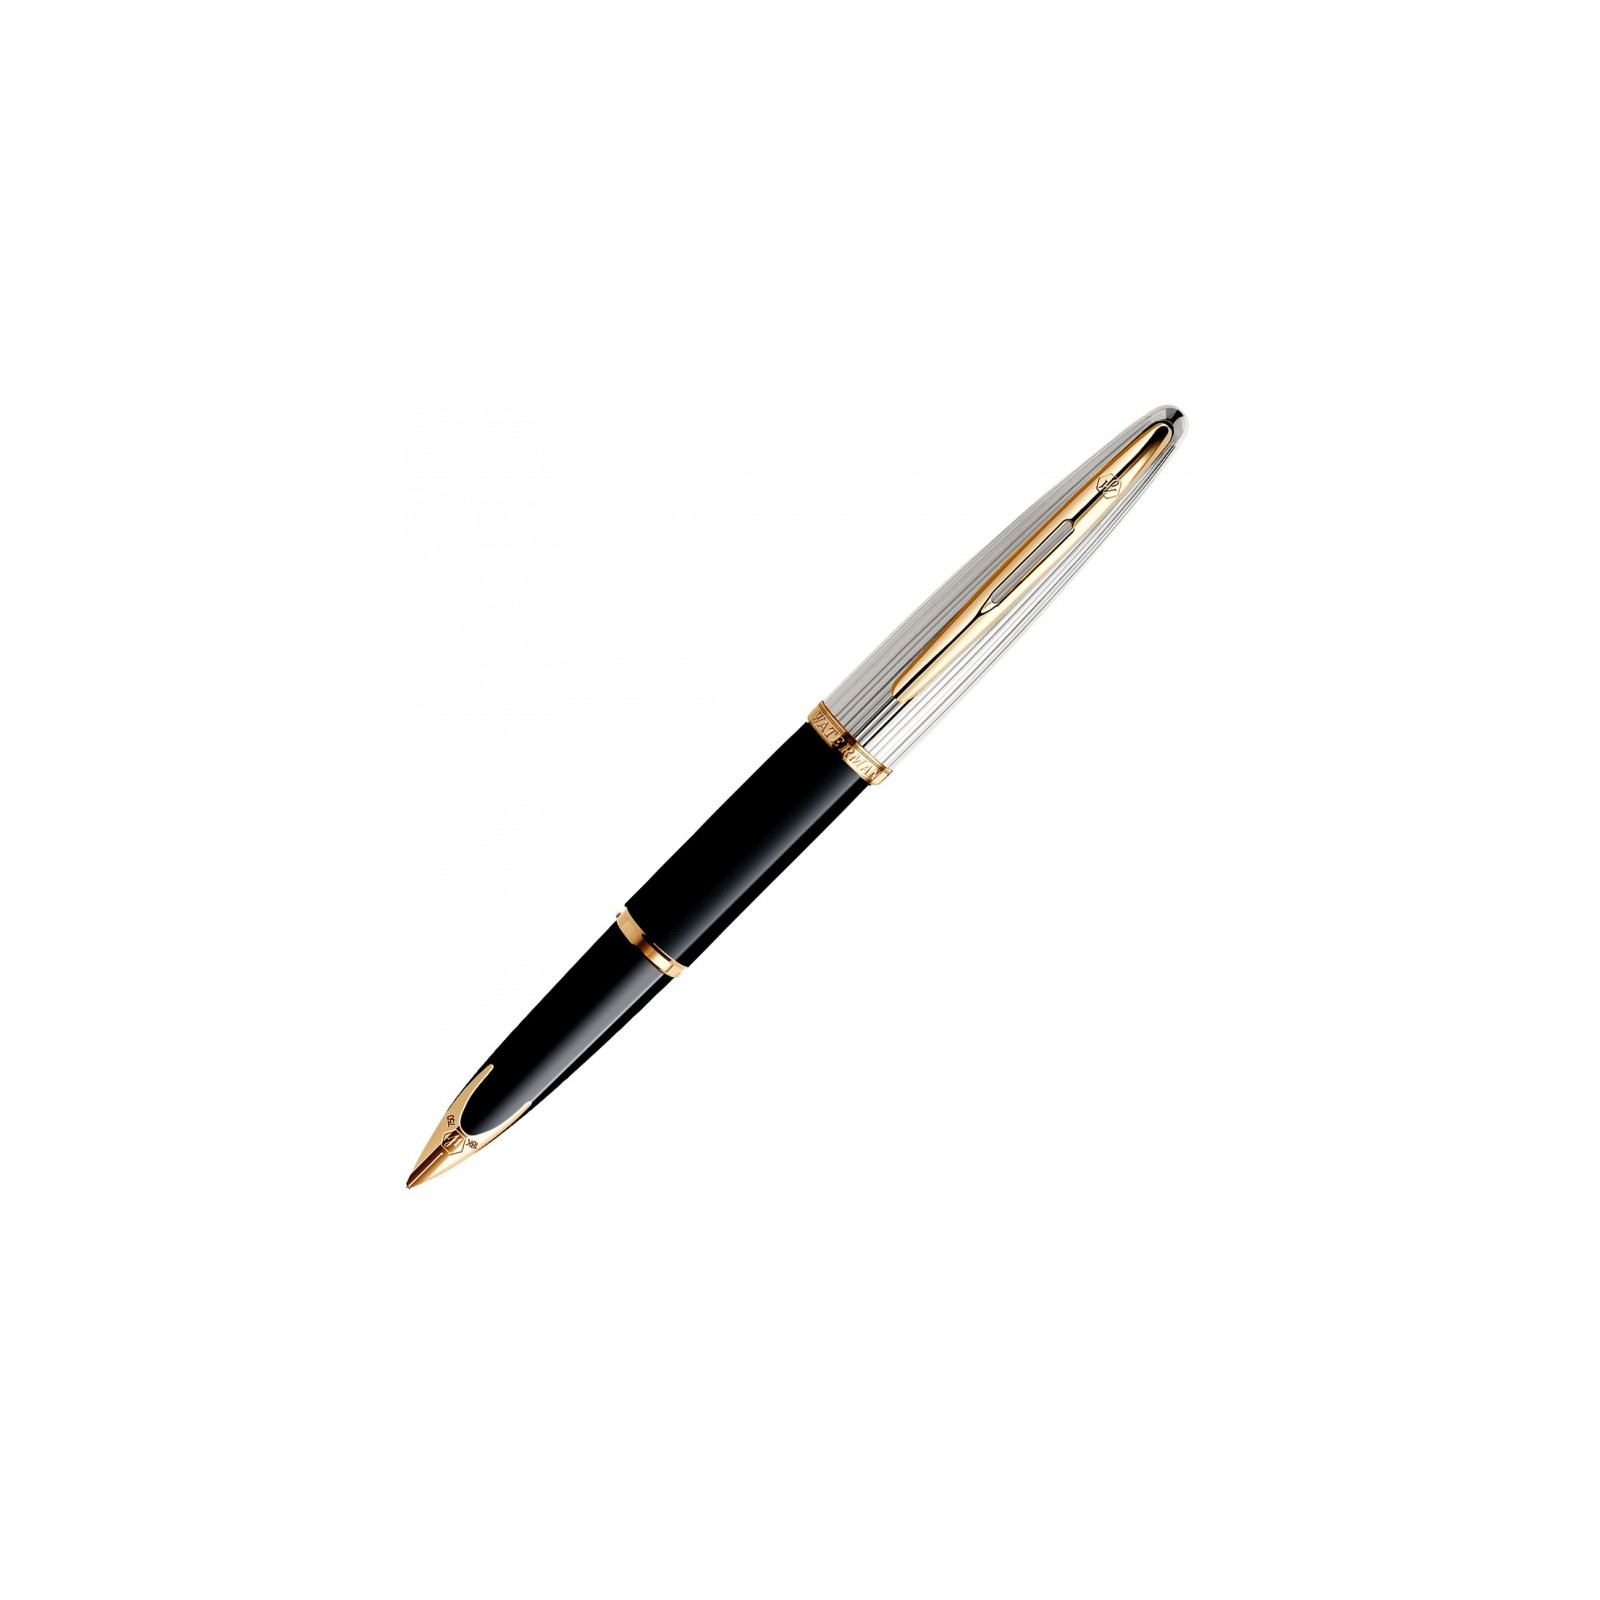 Ручка перьевая Waterman CARENE Deluxe Black/silver  FP F (11 200) изображение 3